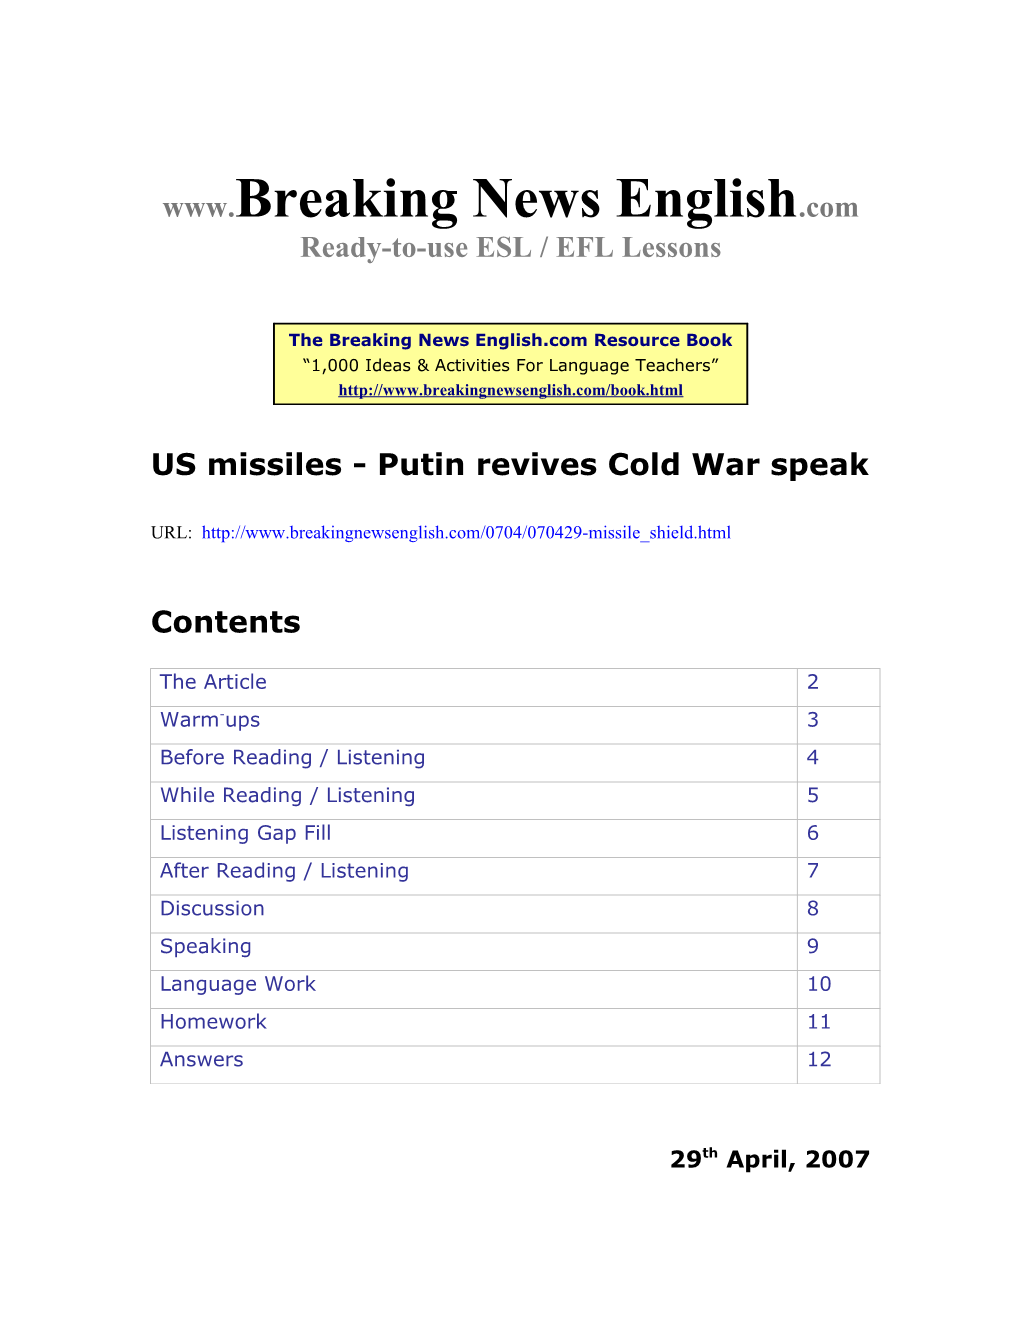 US Missiles: Putin Revives Cold War Speak